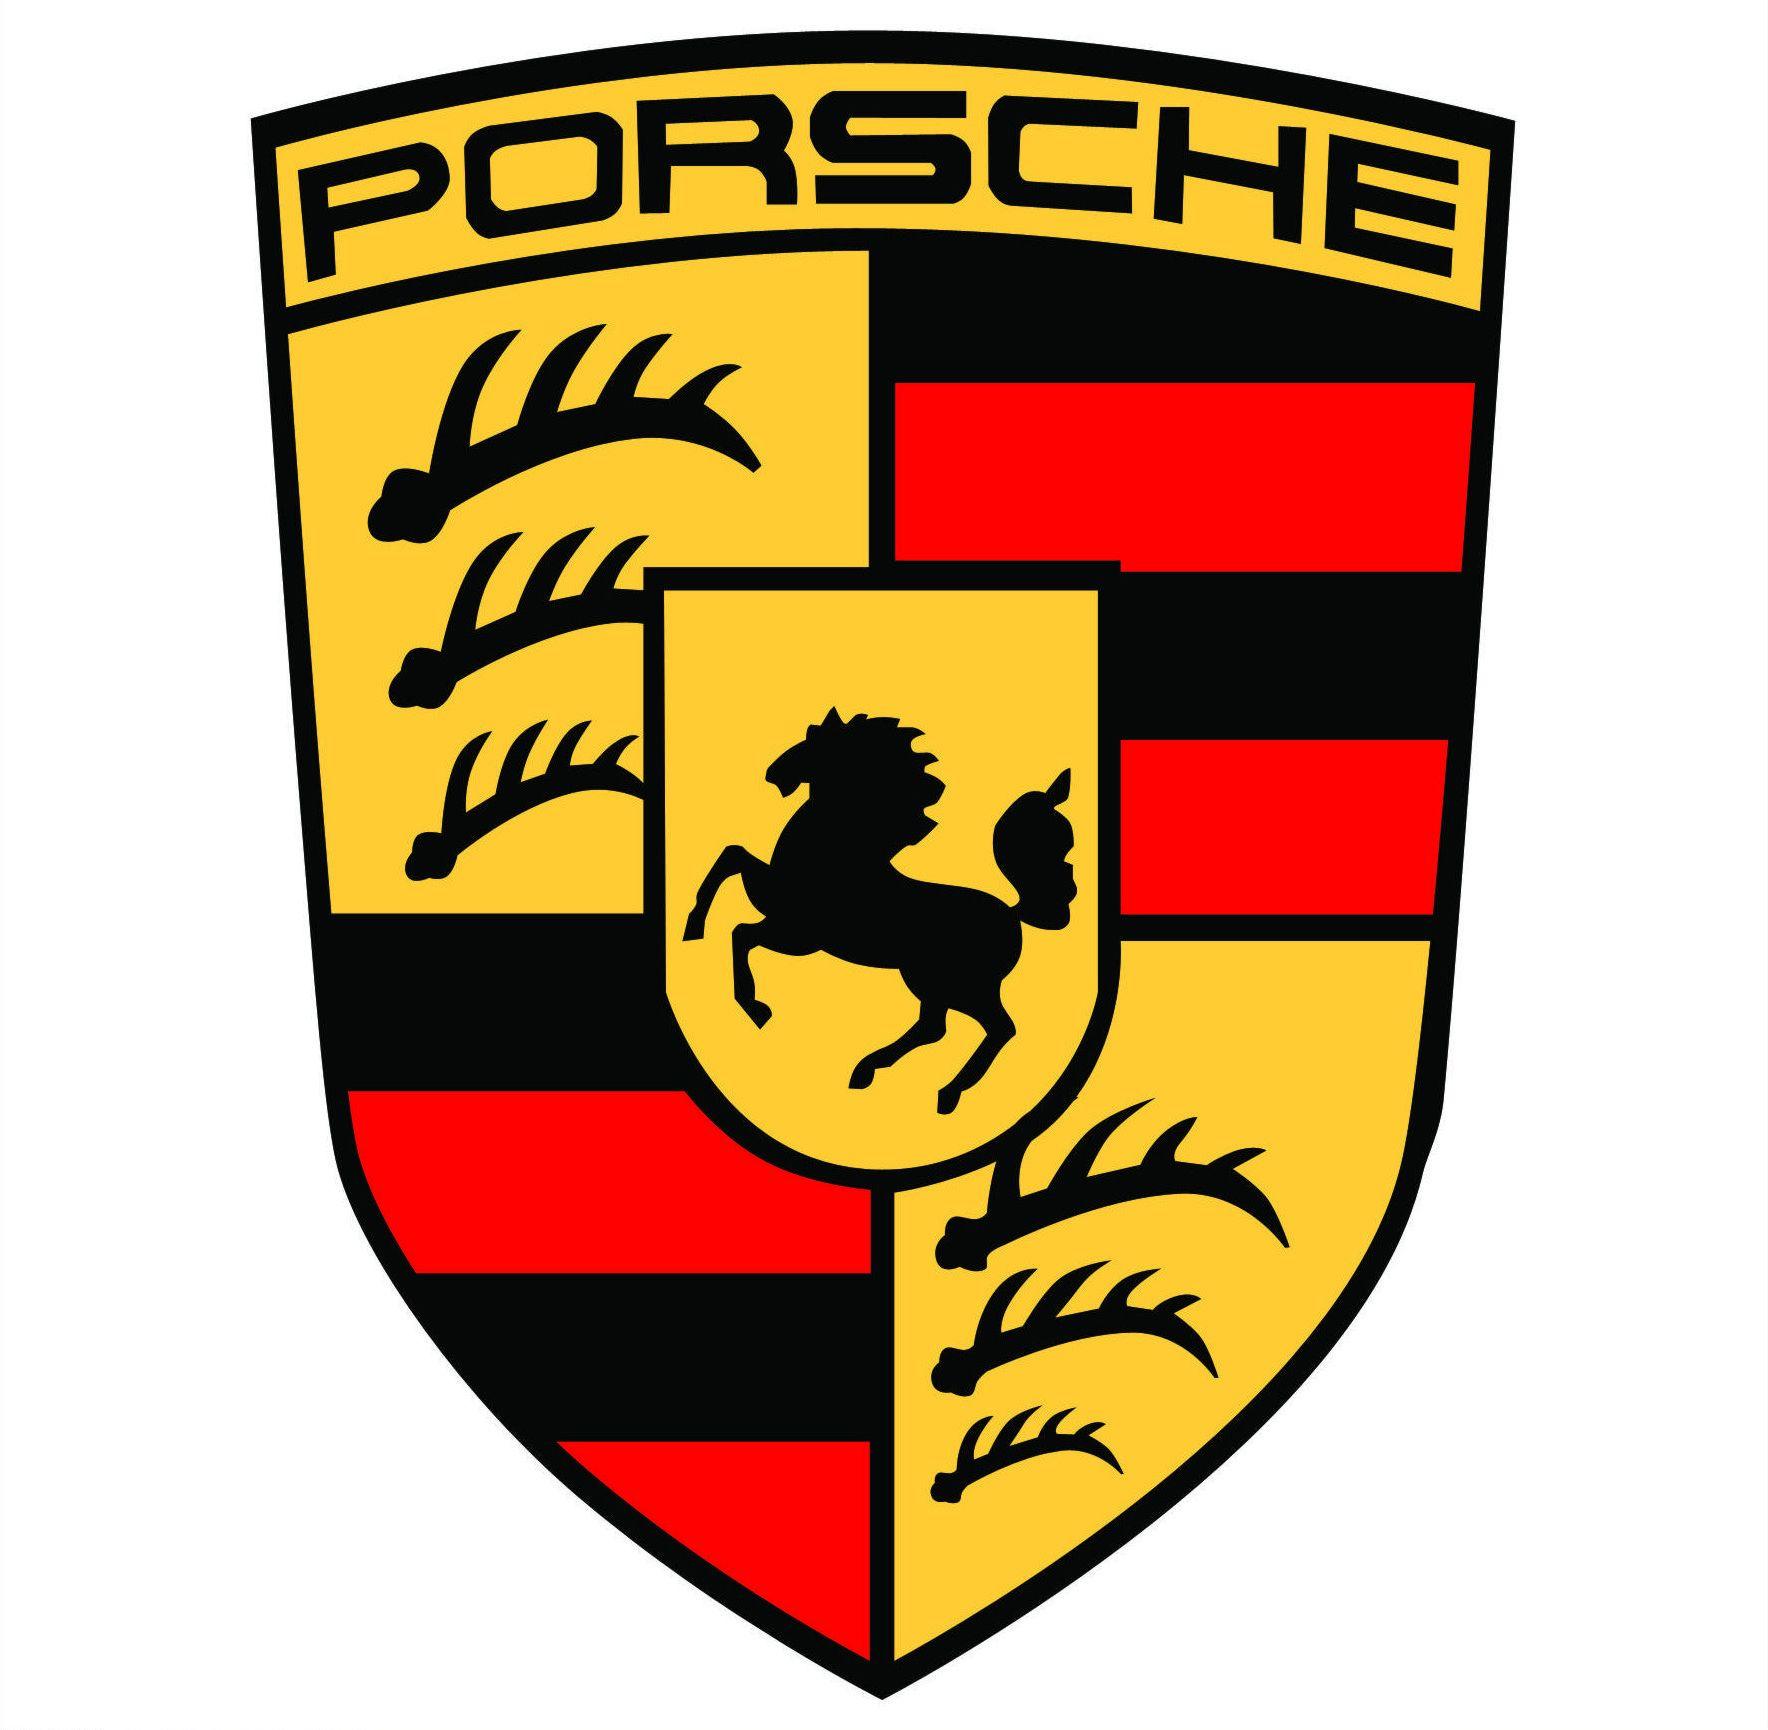 Porsche Logo - porsche logo vector - Google Search | Brands | Pinterest | Porsche ...